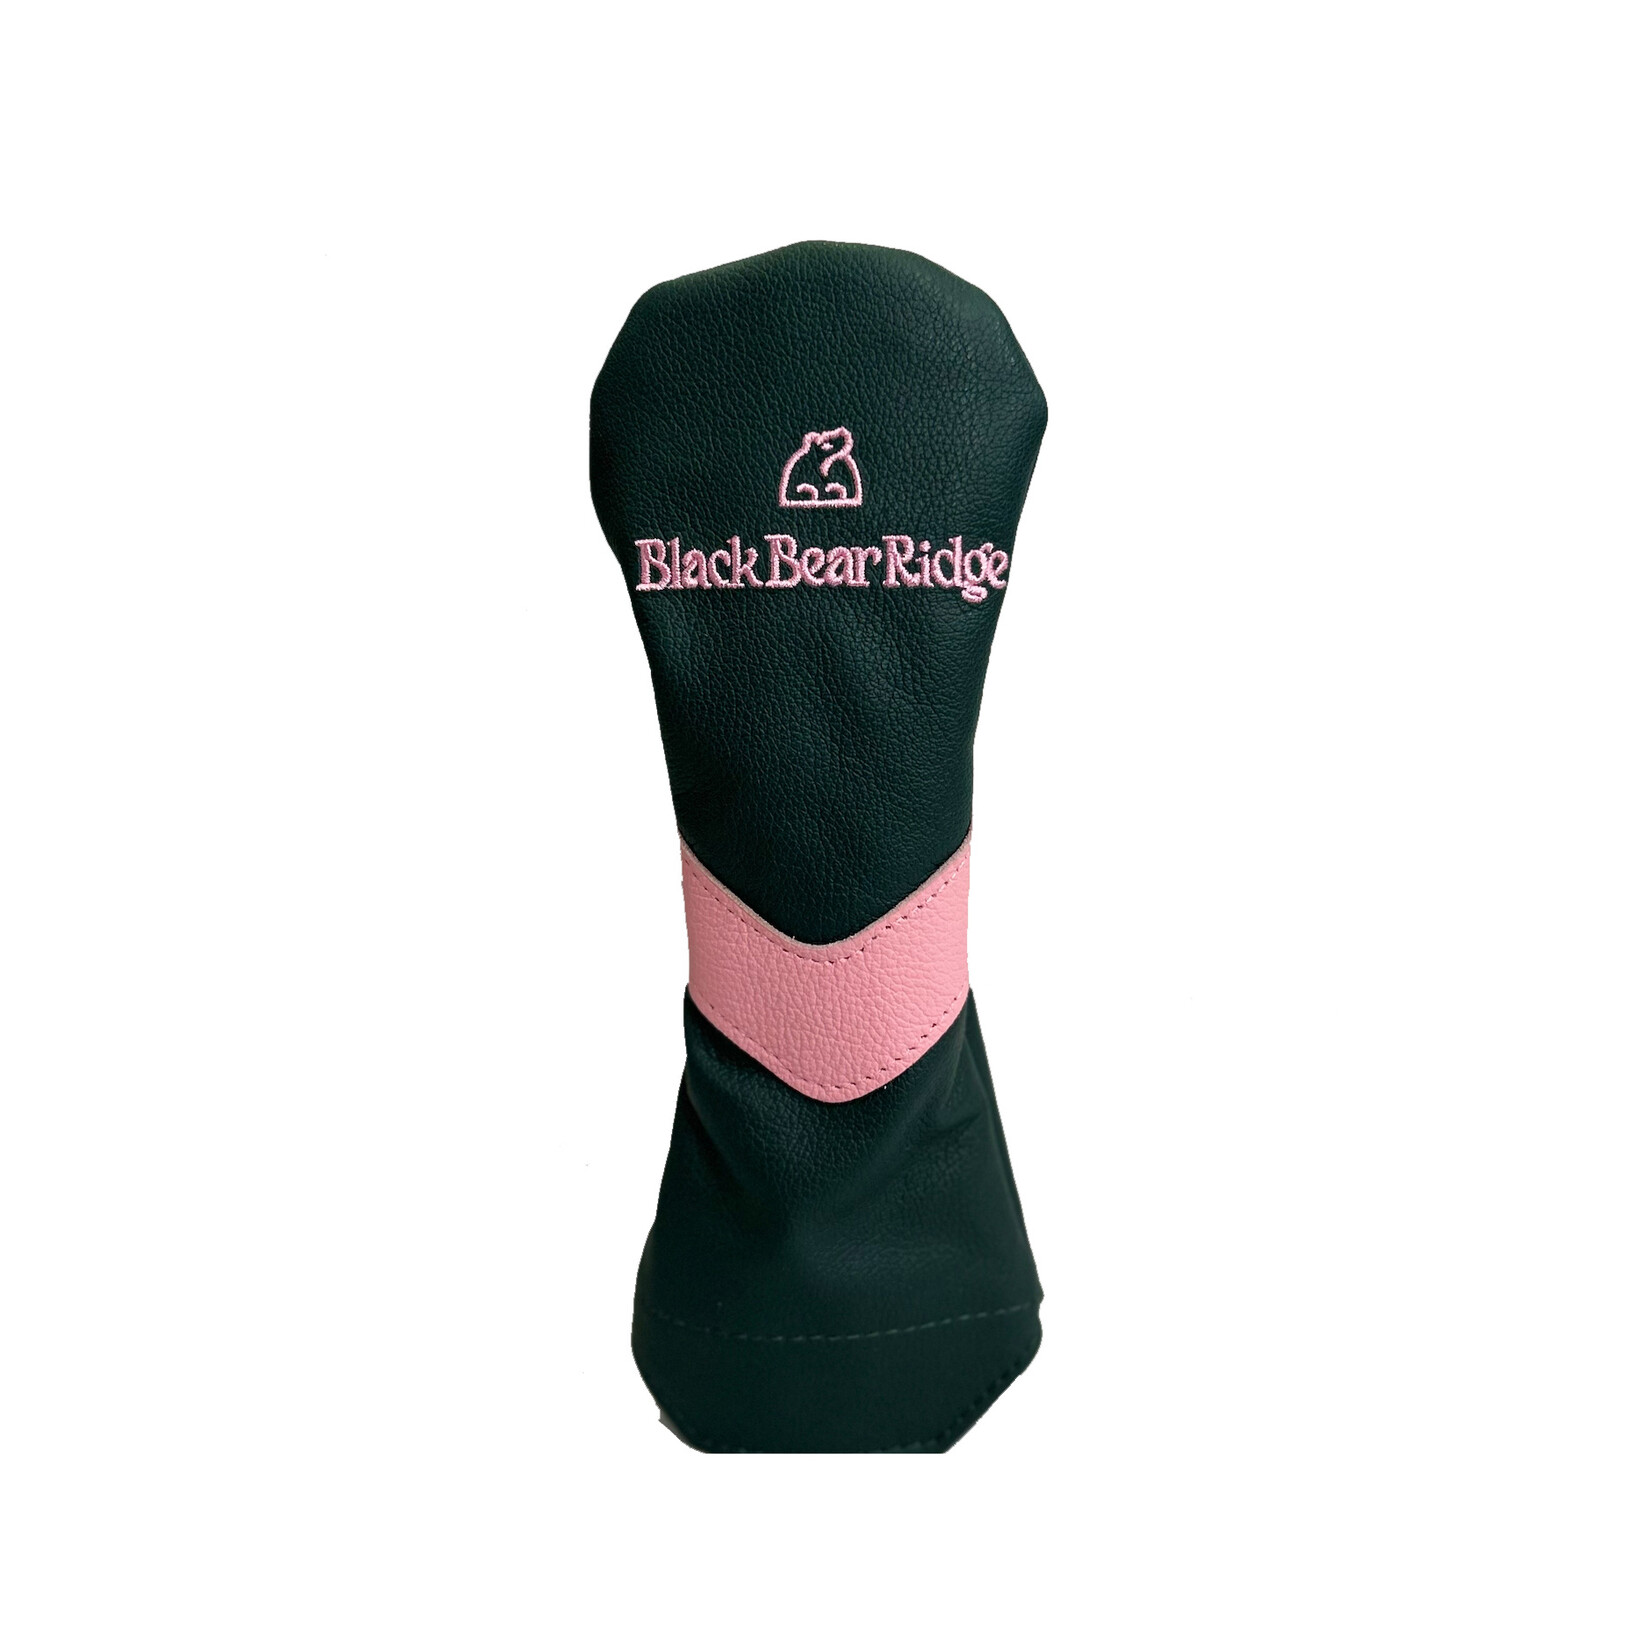 23- BBR Fairway Headcover (Green/Pink)